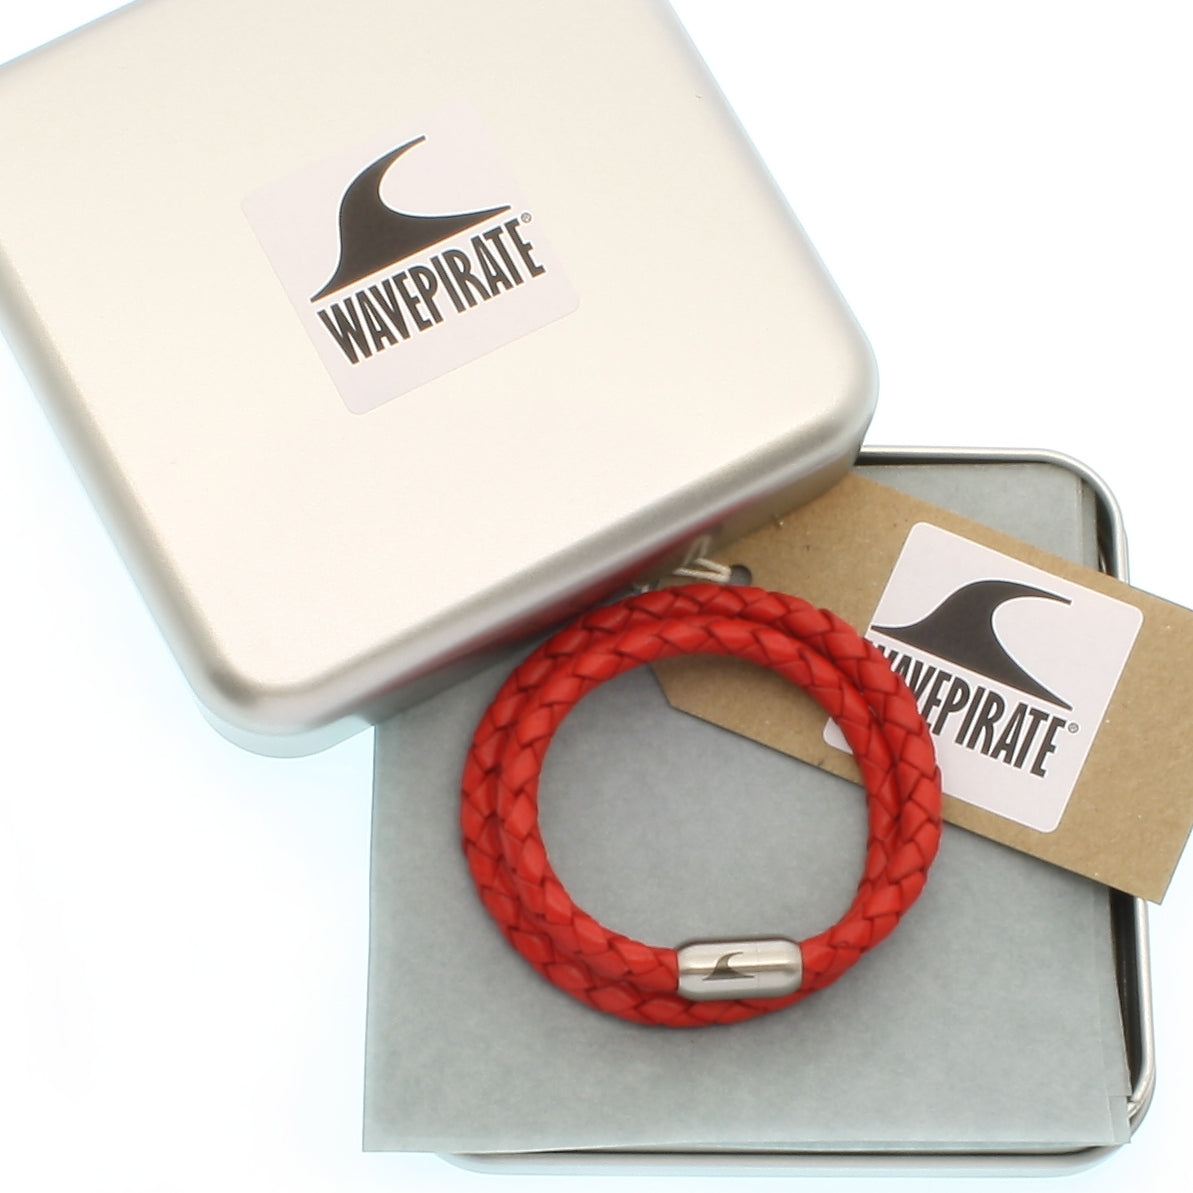 Leder-Armband-Damen-hawaii-rot-geflochten-Edelstahlverschluss-geschenkverpackung-wavepirate-shop-f